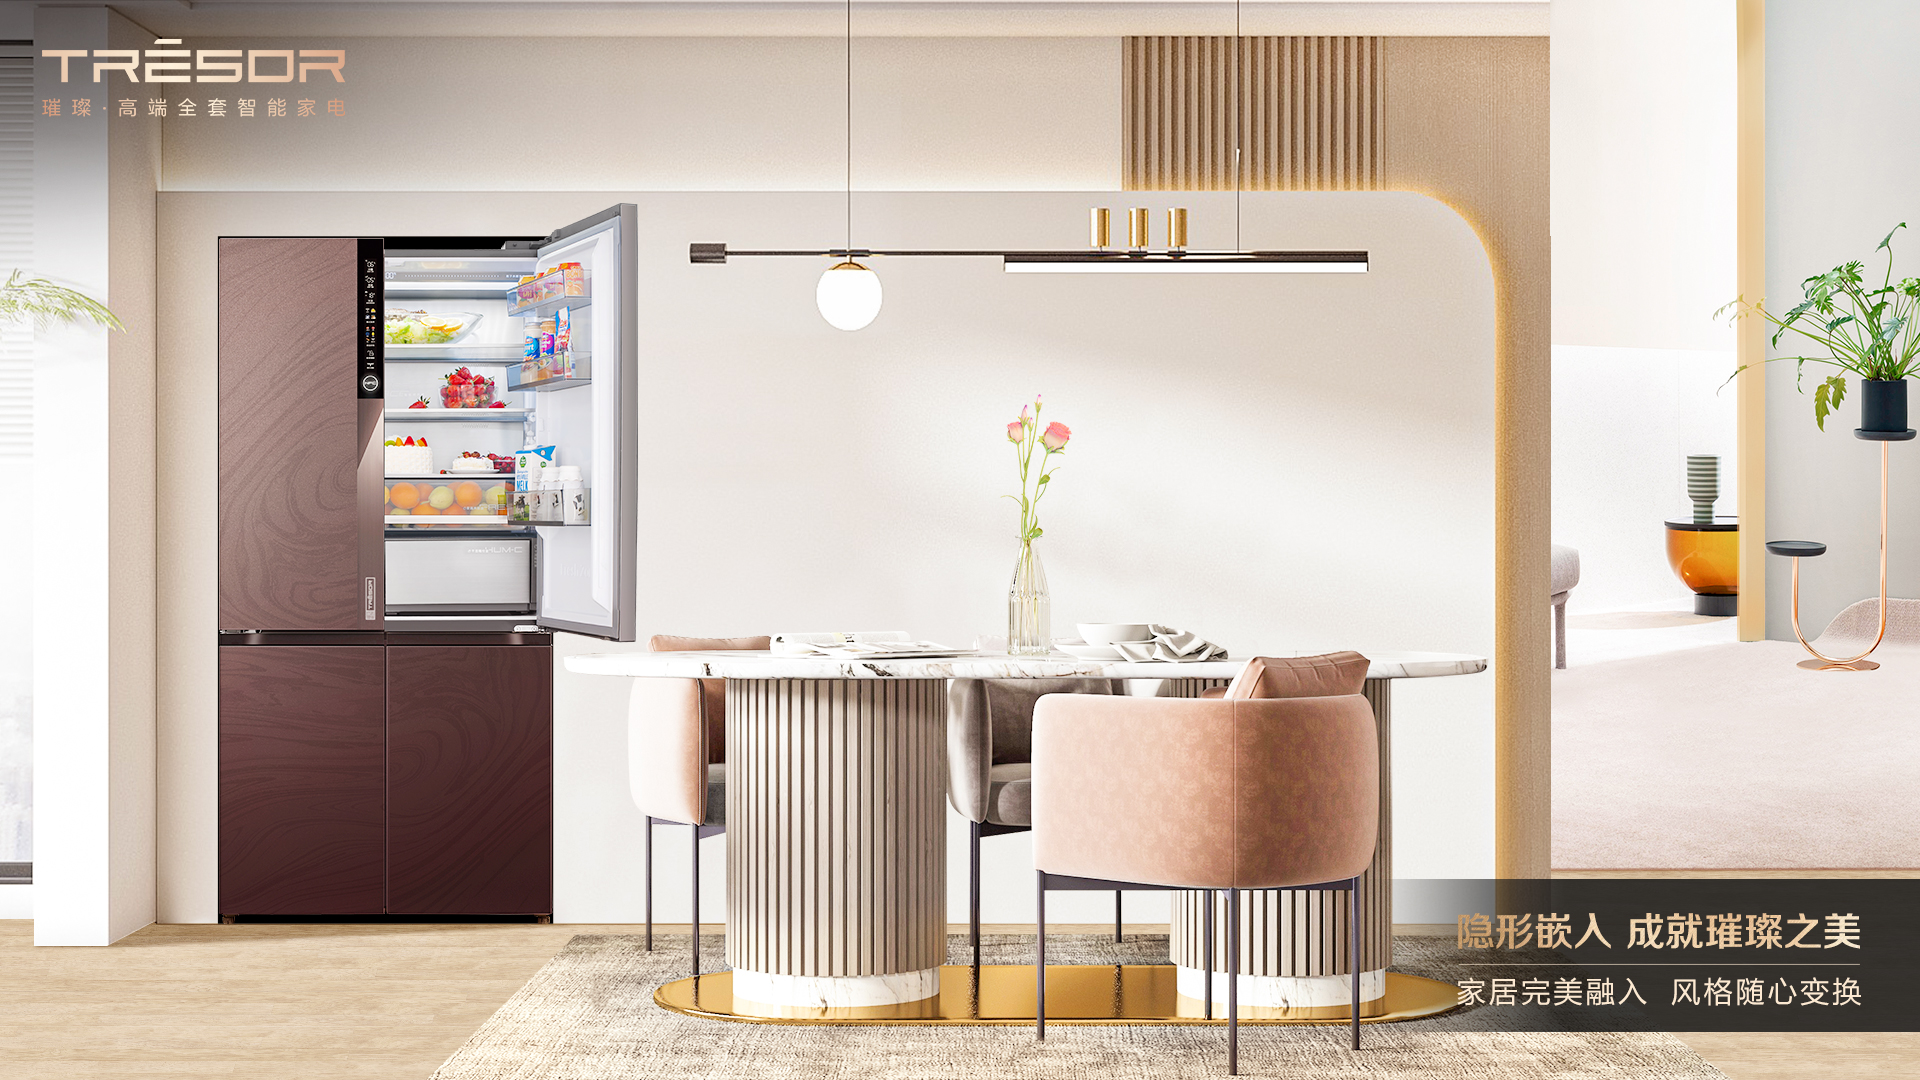 海信冰箱将携多款新品亮相AWE 真空璀璨503“隐形嵌入”厨房